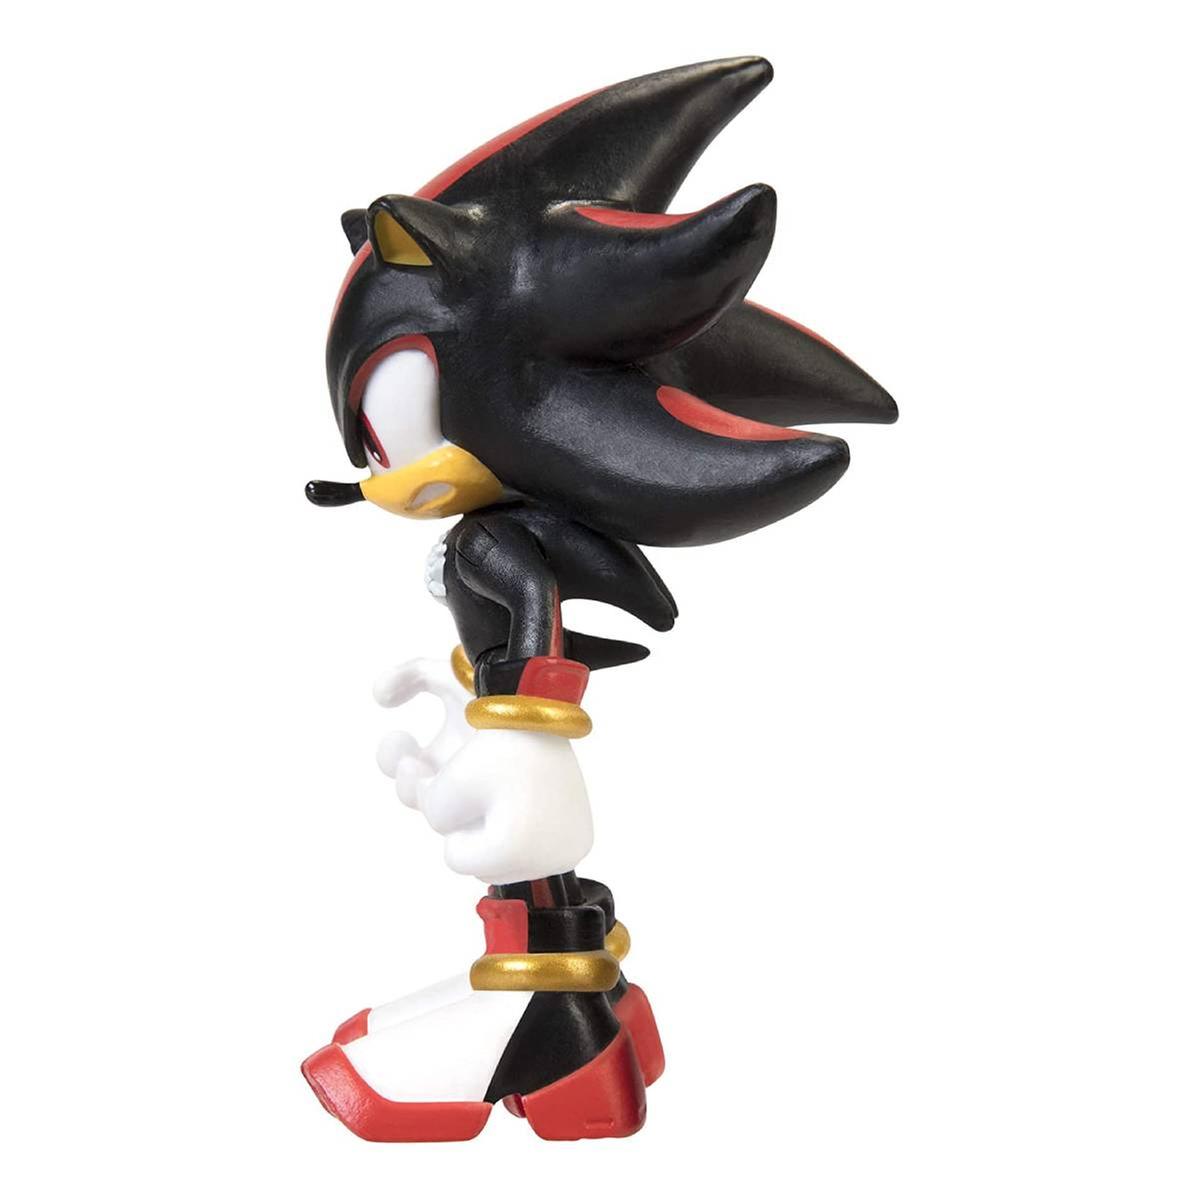  Sonic the Hedgehog Mini figura de acción clásica de